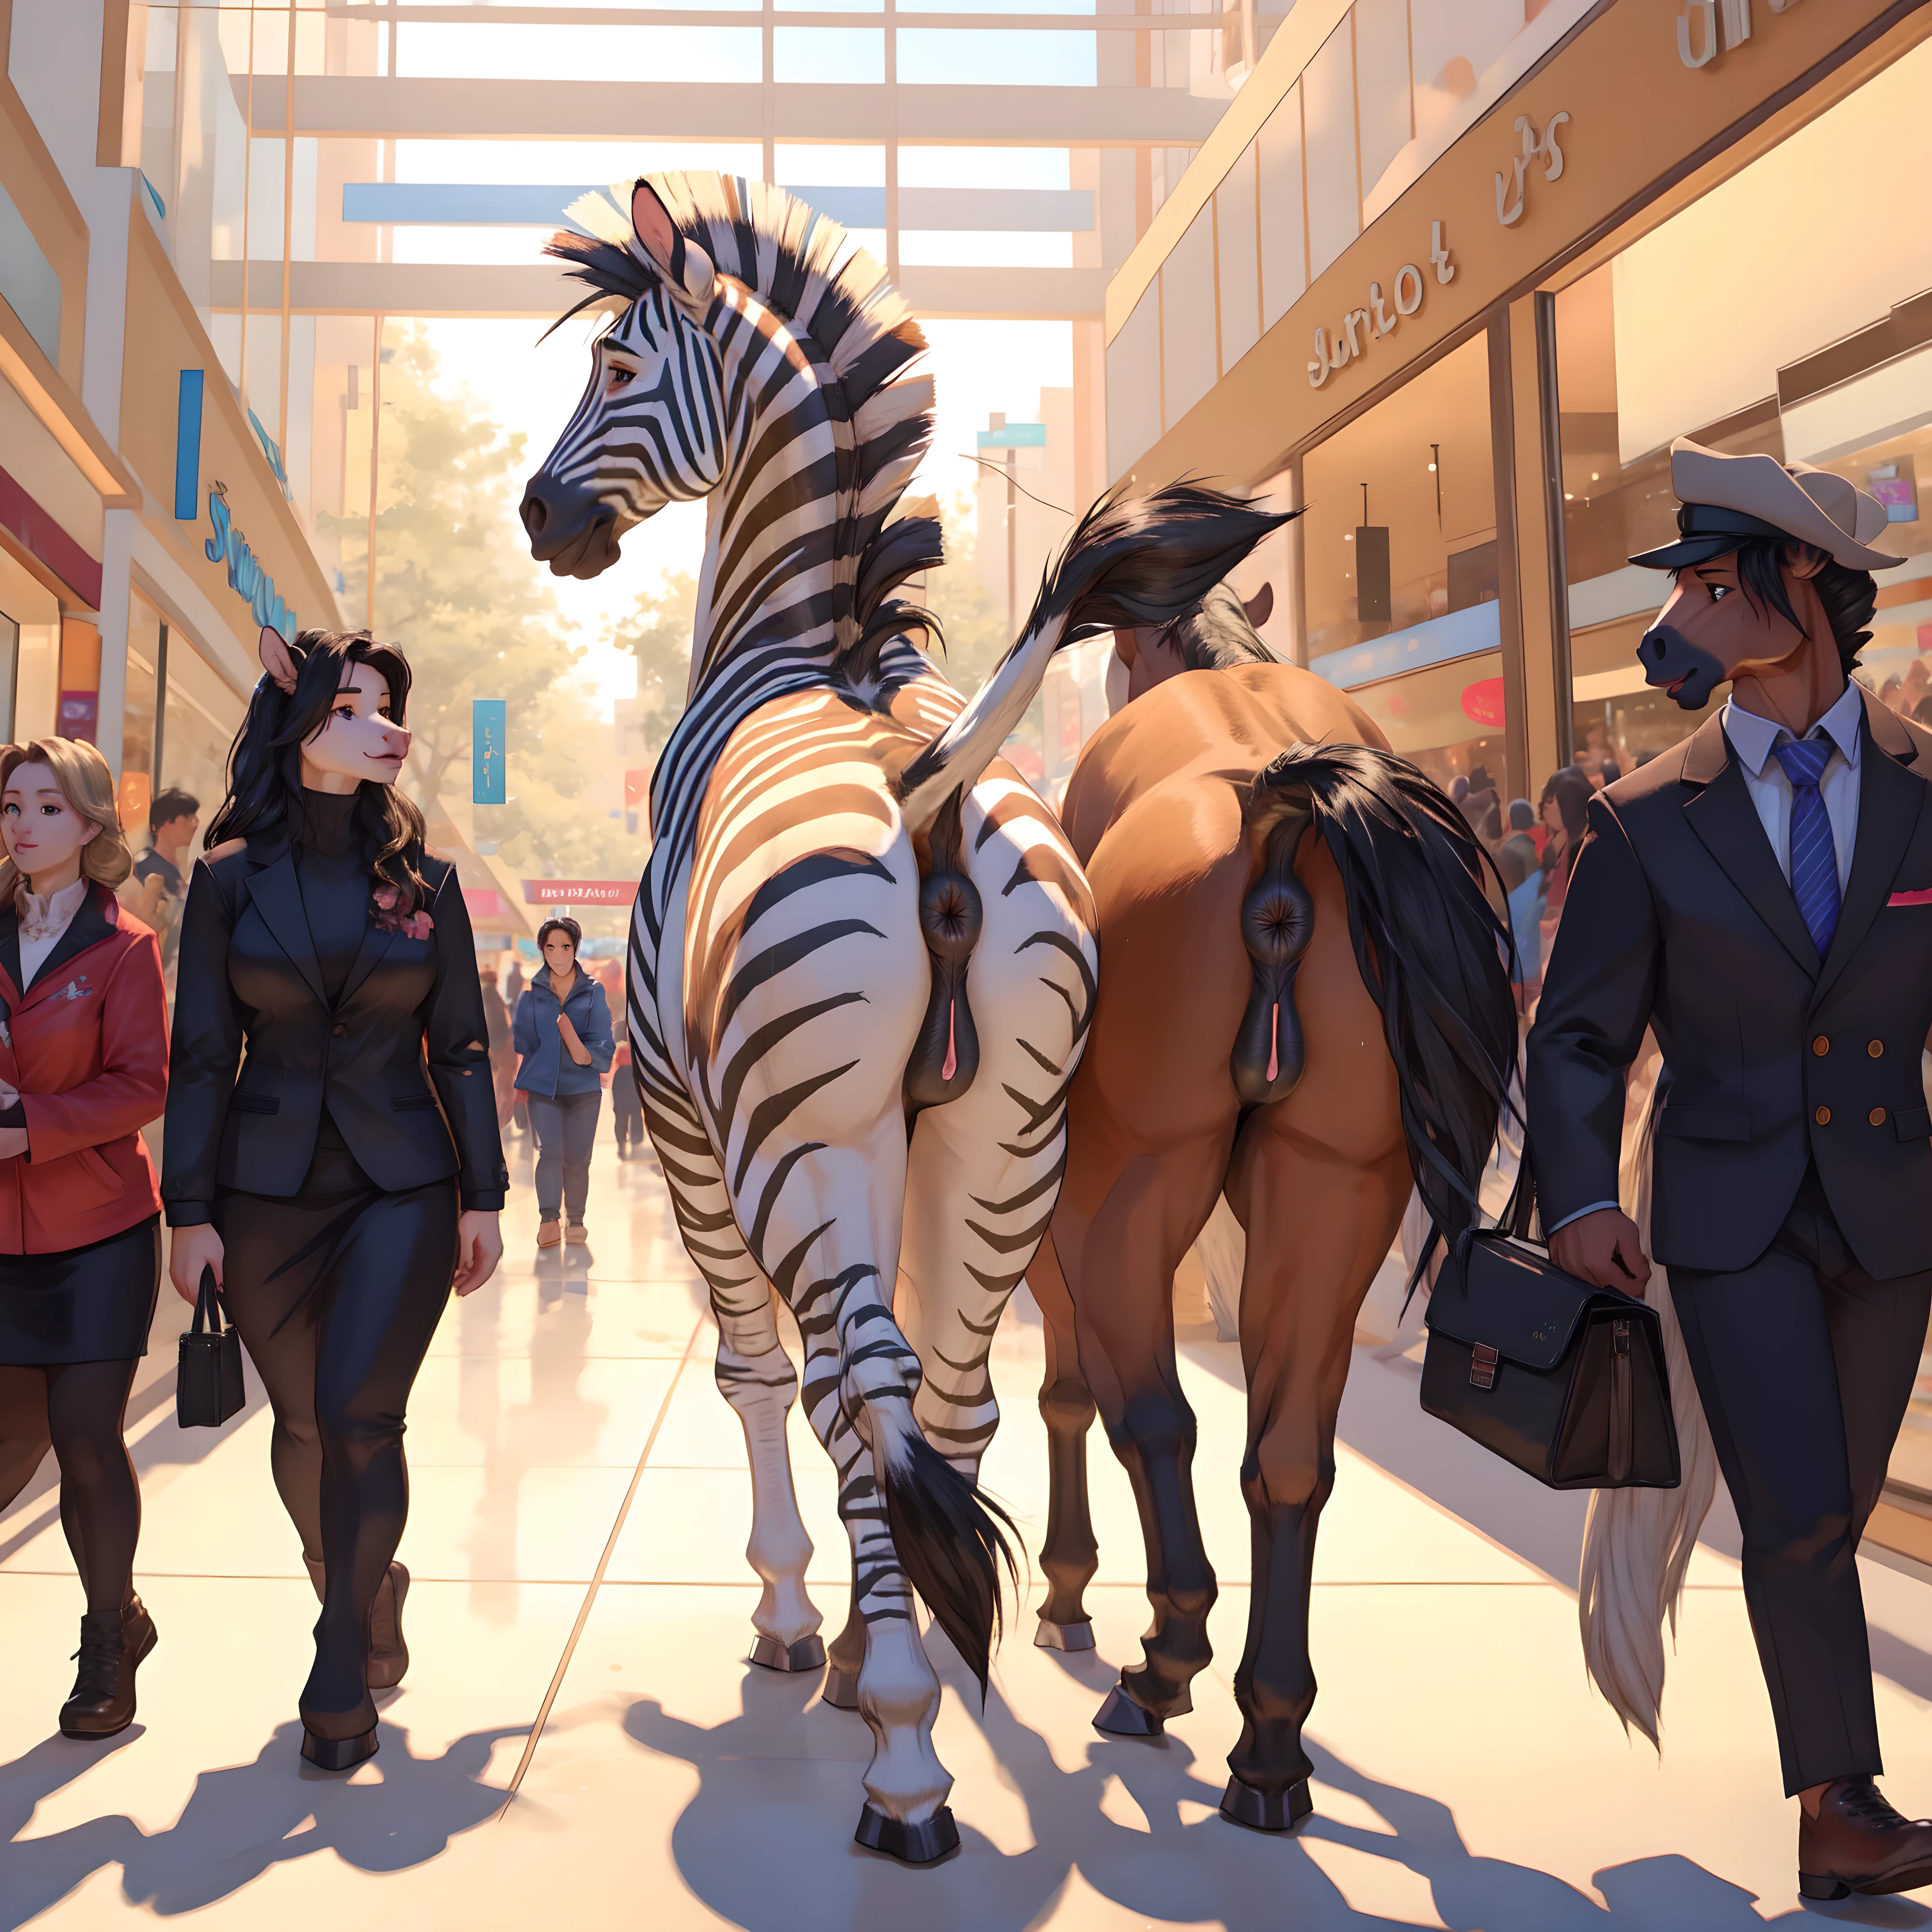 Zebra selvagem , fêmea, buceta de cavalo, ânus, bunda, andando , shopping center, pessoas no fundo 